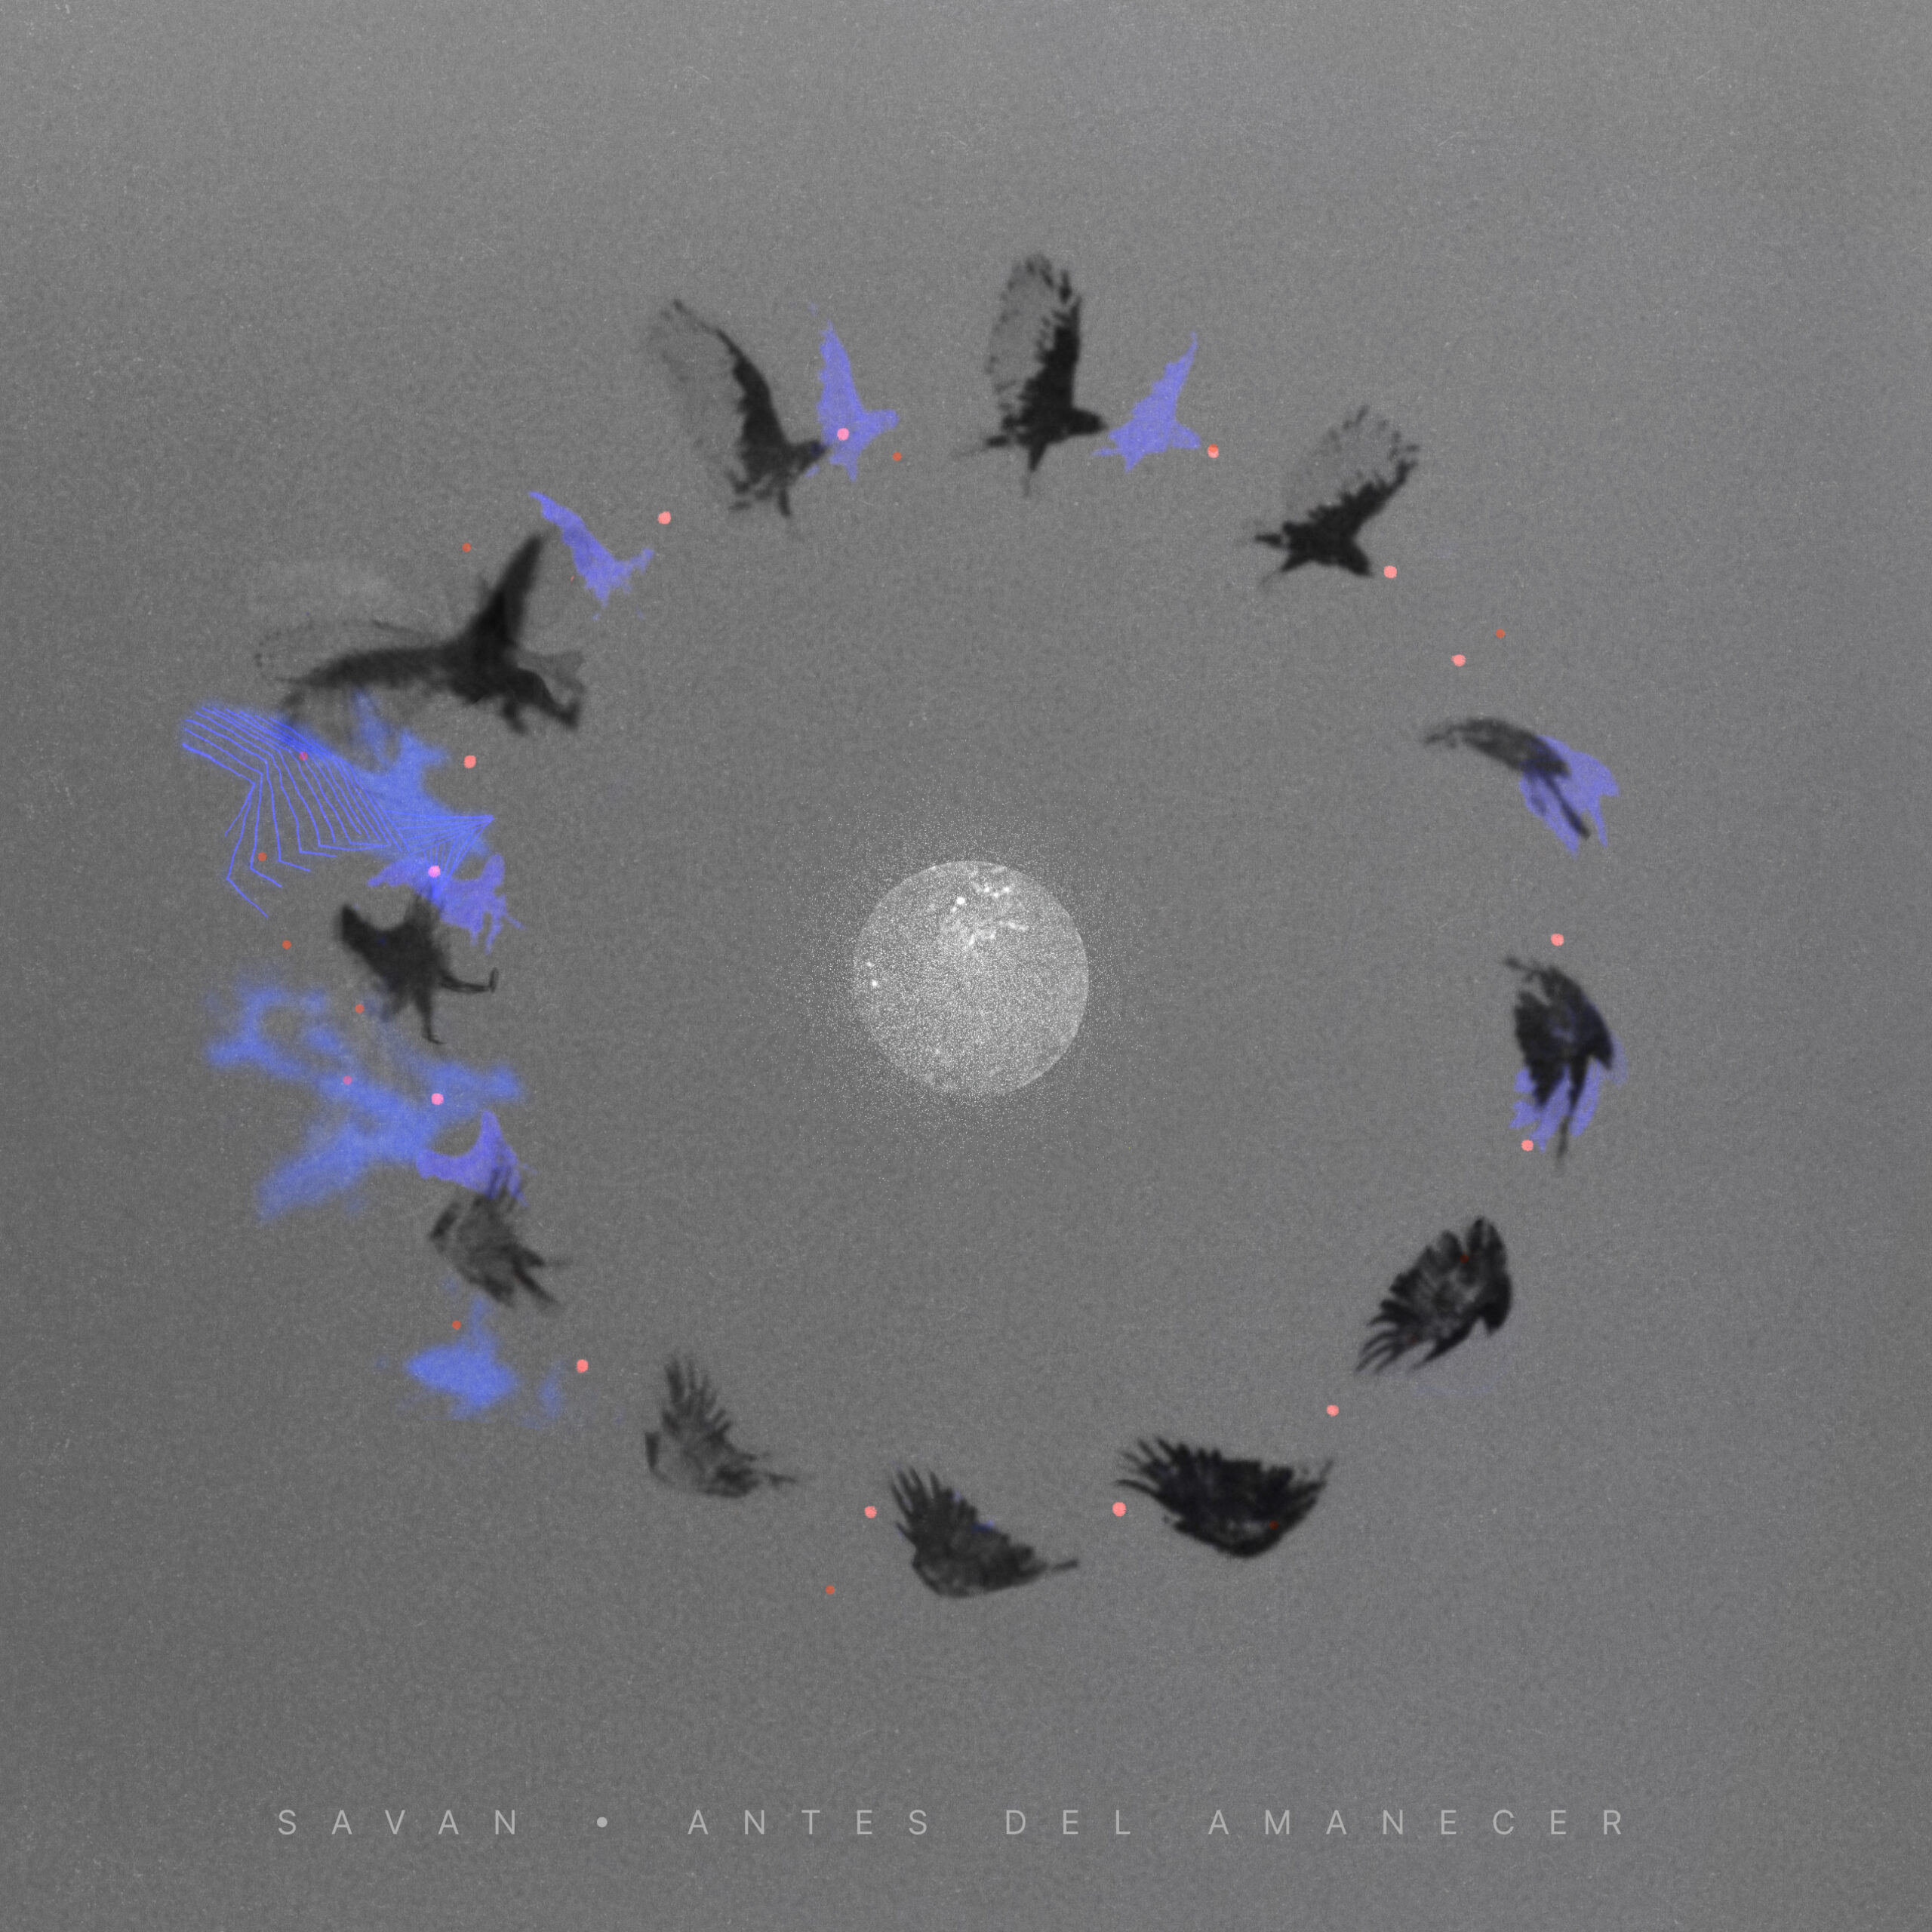 Savan - Antes del Amanecer cover art